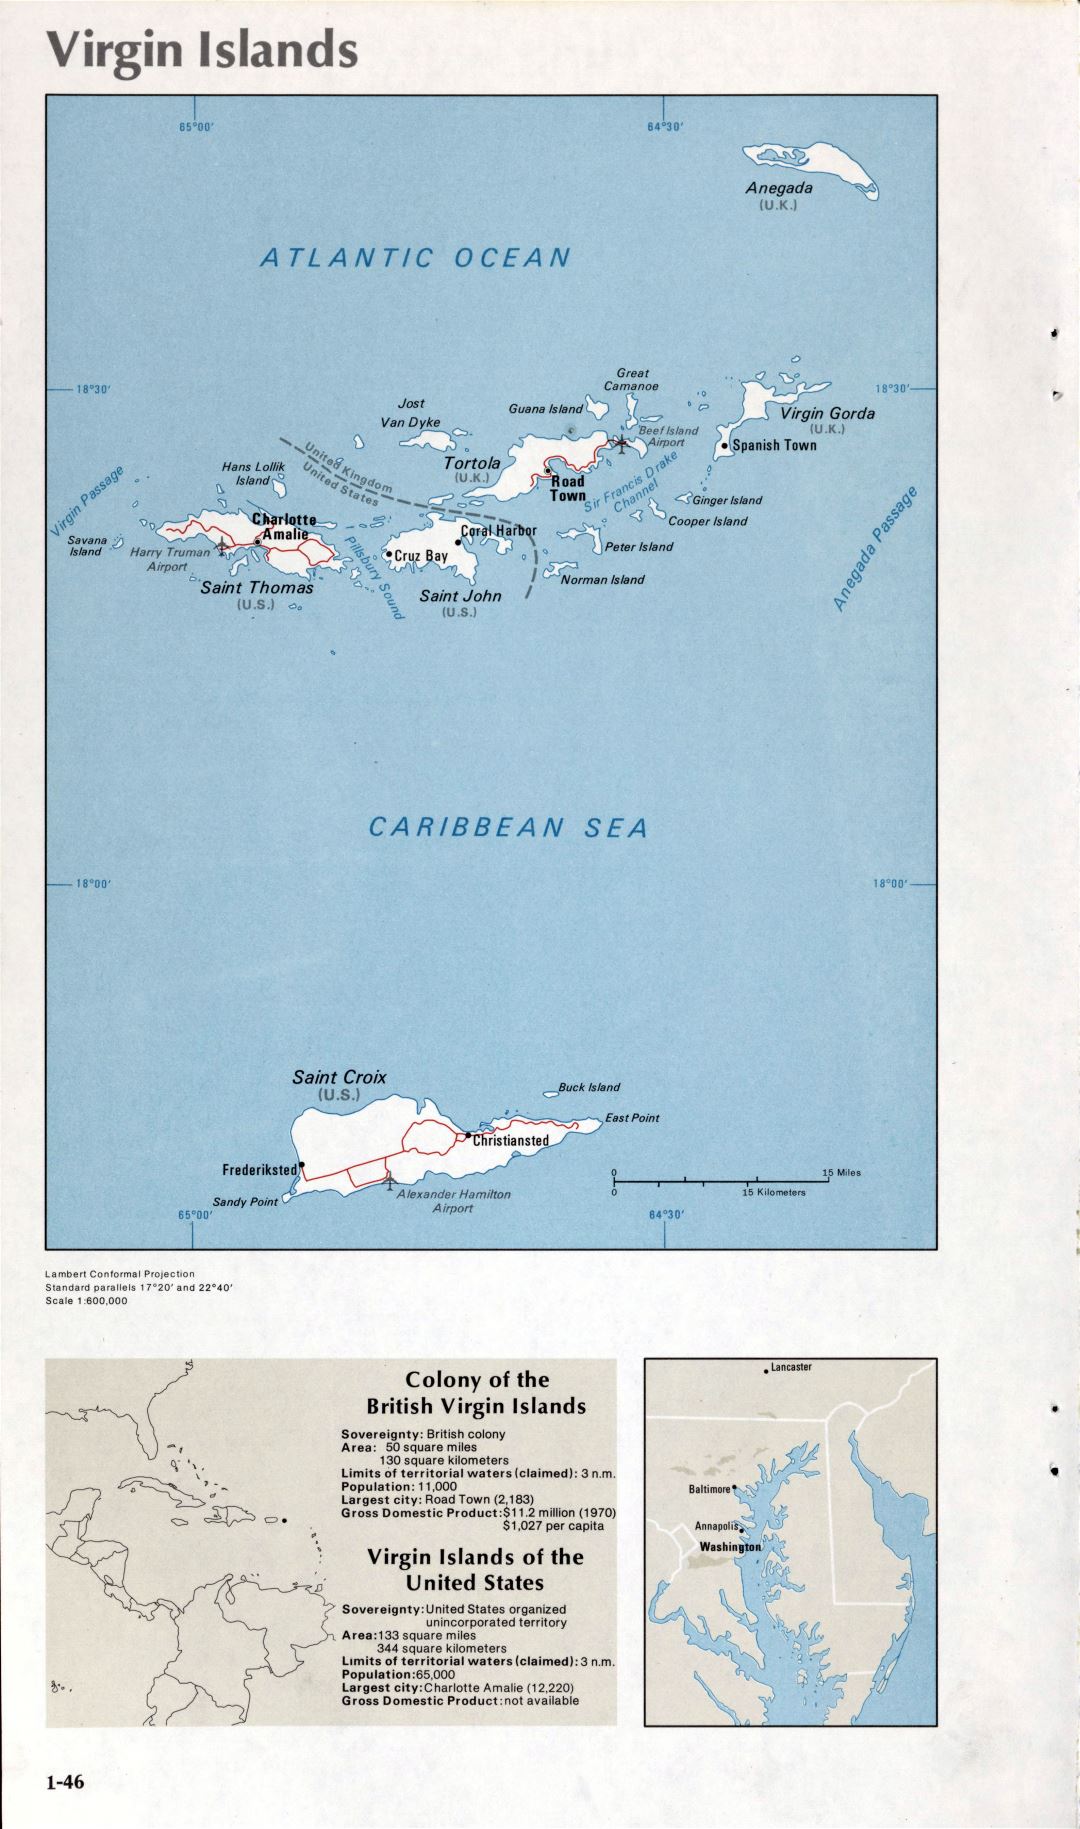 Map of Virgin Islands (1-46)